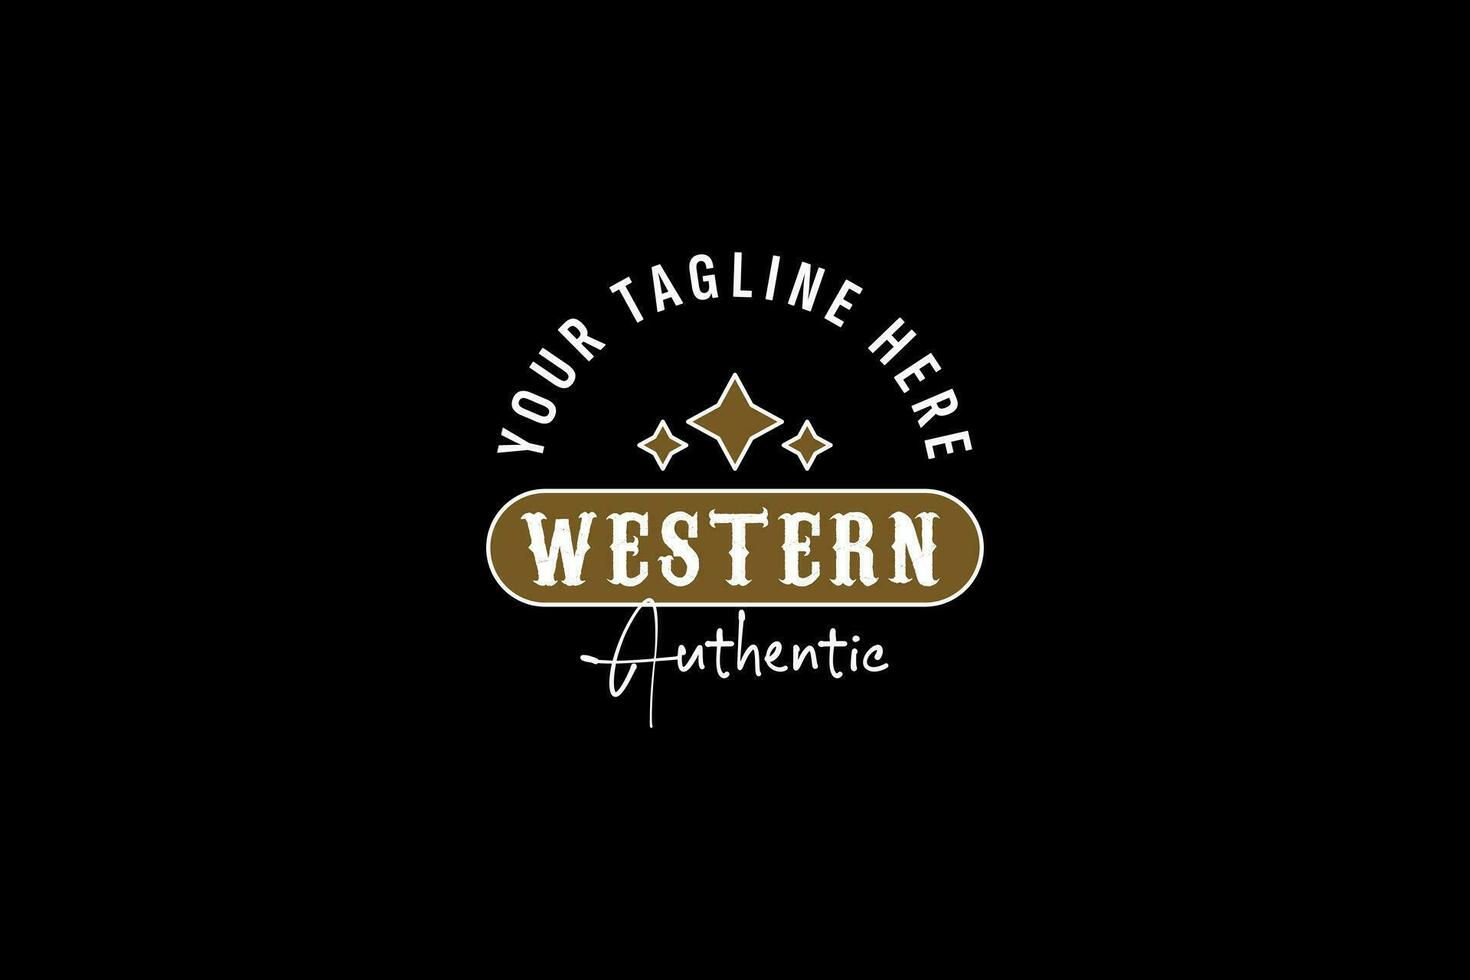 Vintage Country Emblem Typography for Western Bar Restaurant Logo design inspiration vector